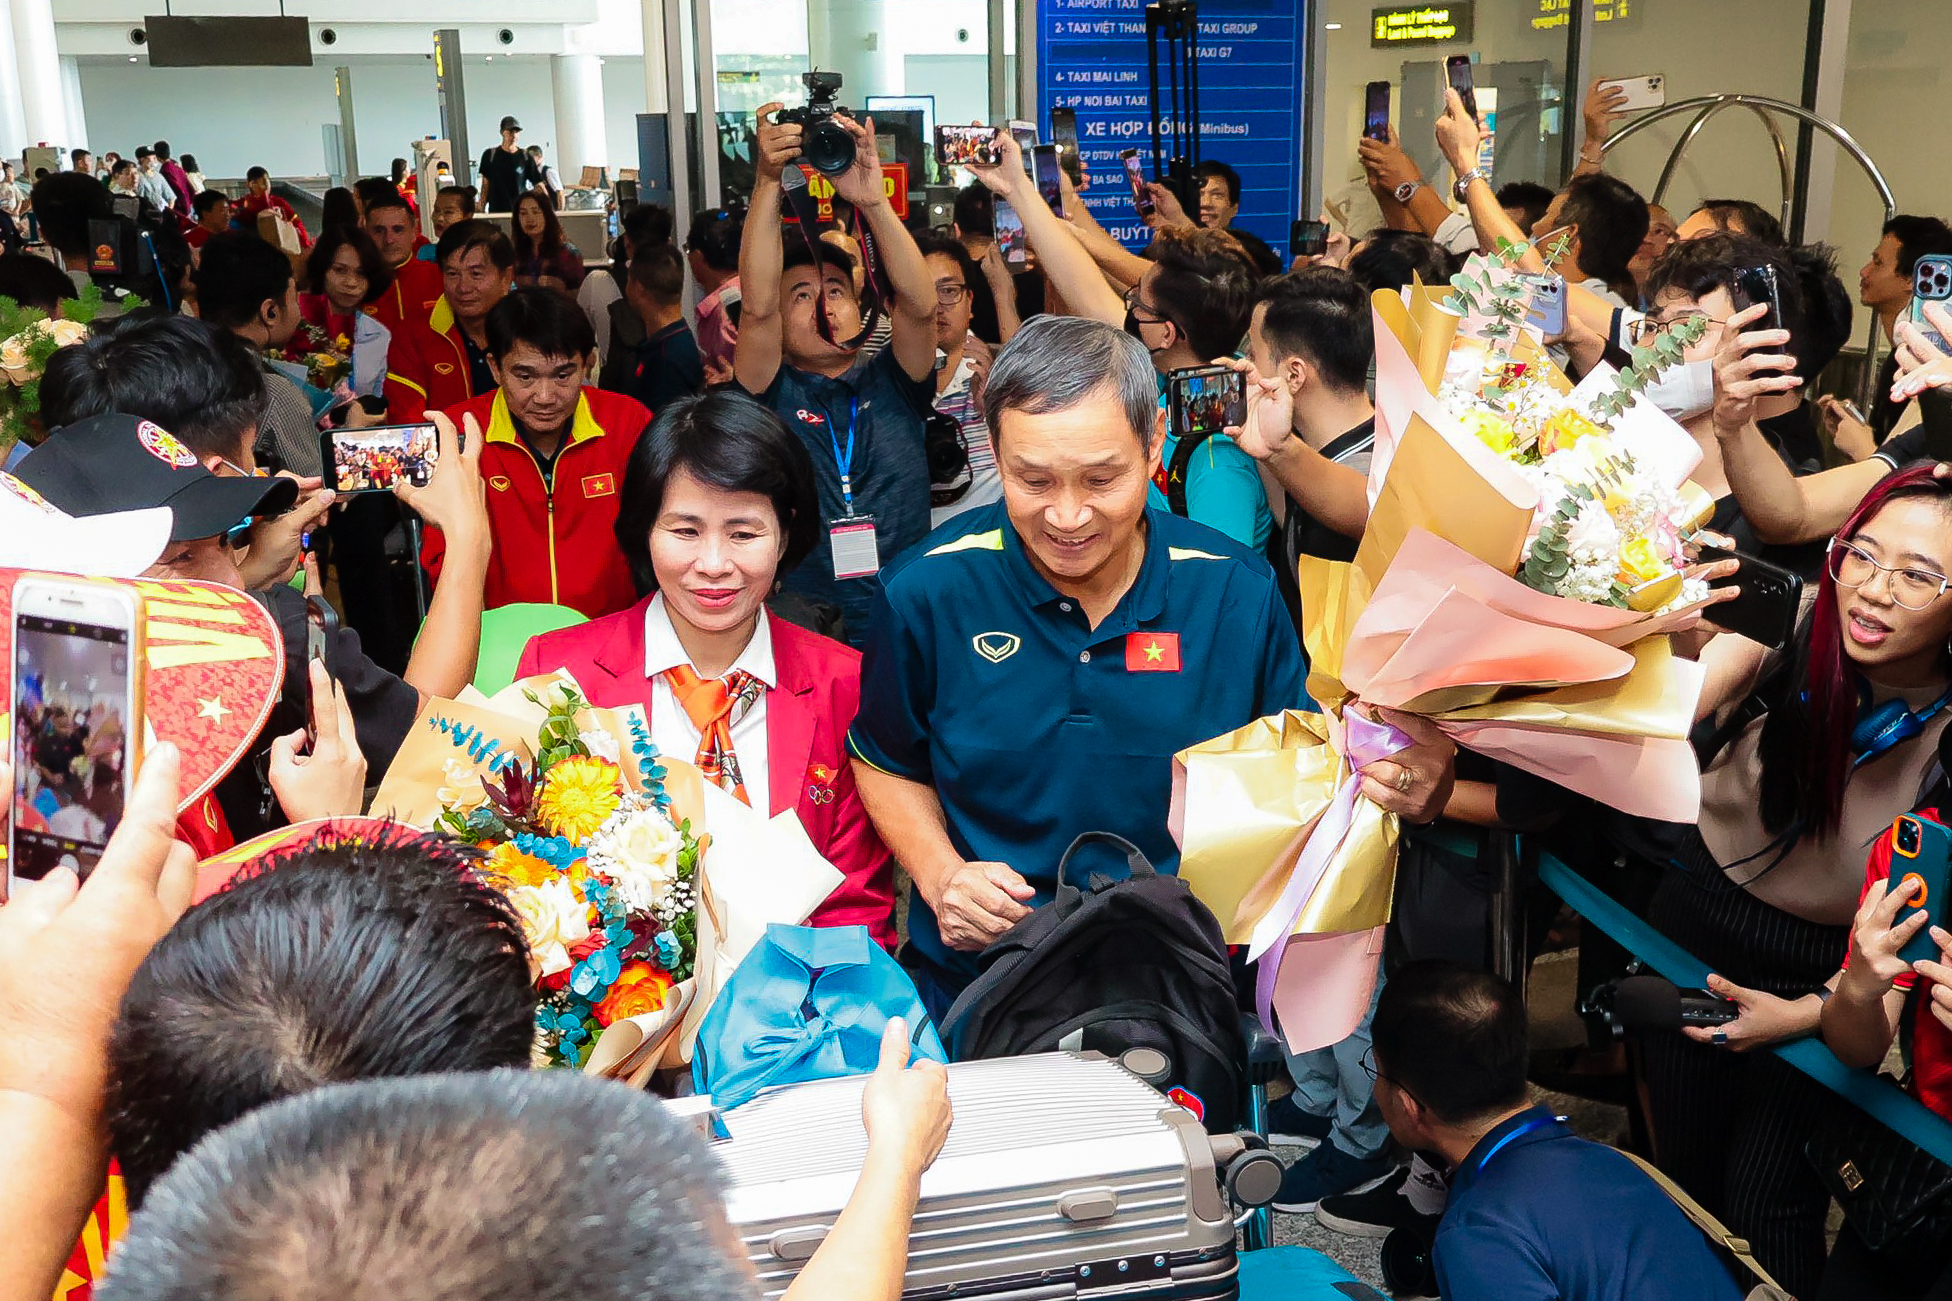 HLV Mai Đức Chung cùng nữ tuyển thủ rạng ngời trở về sau hành trình World Cup lịch sử - Ảnh 1.